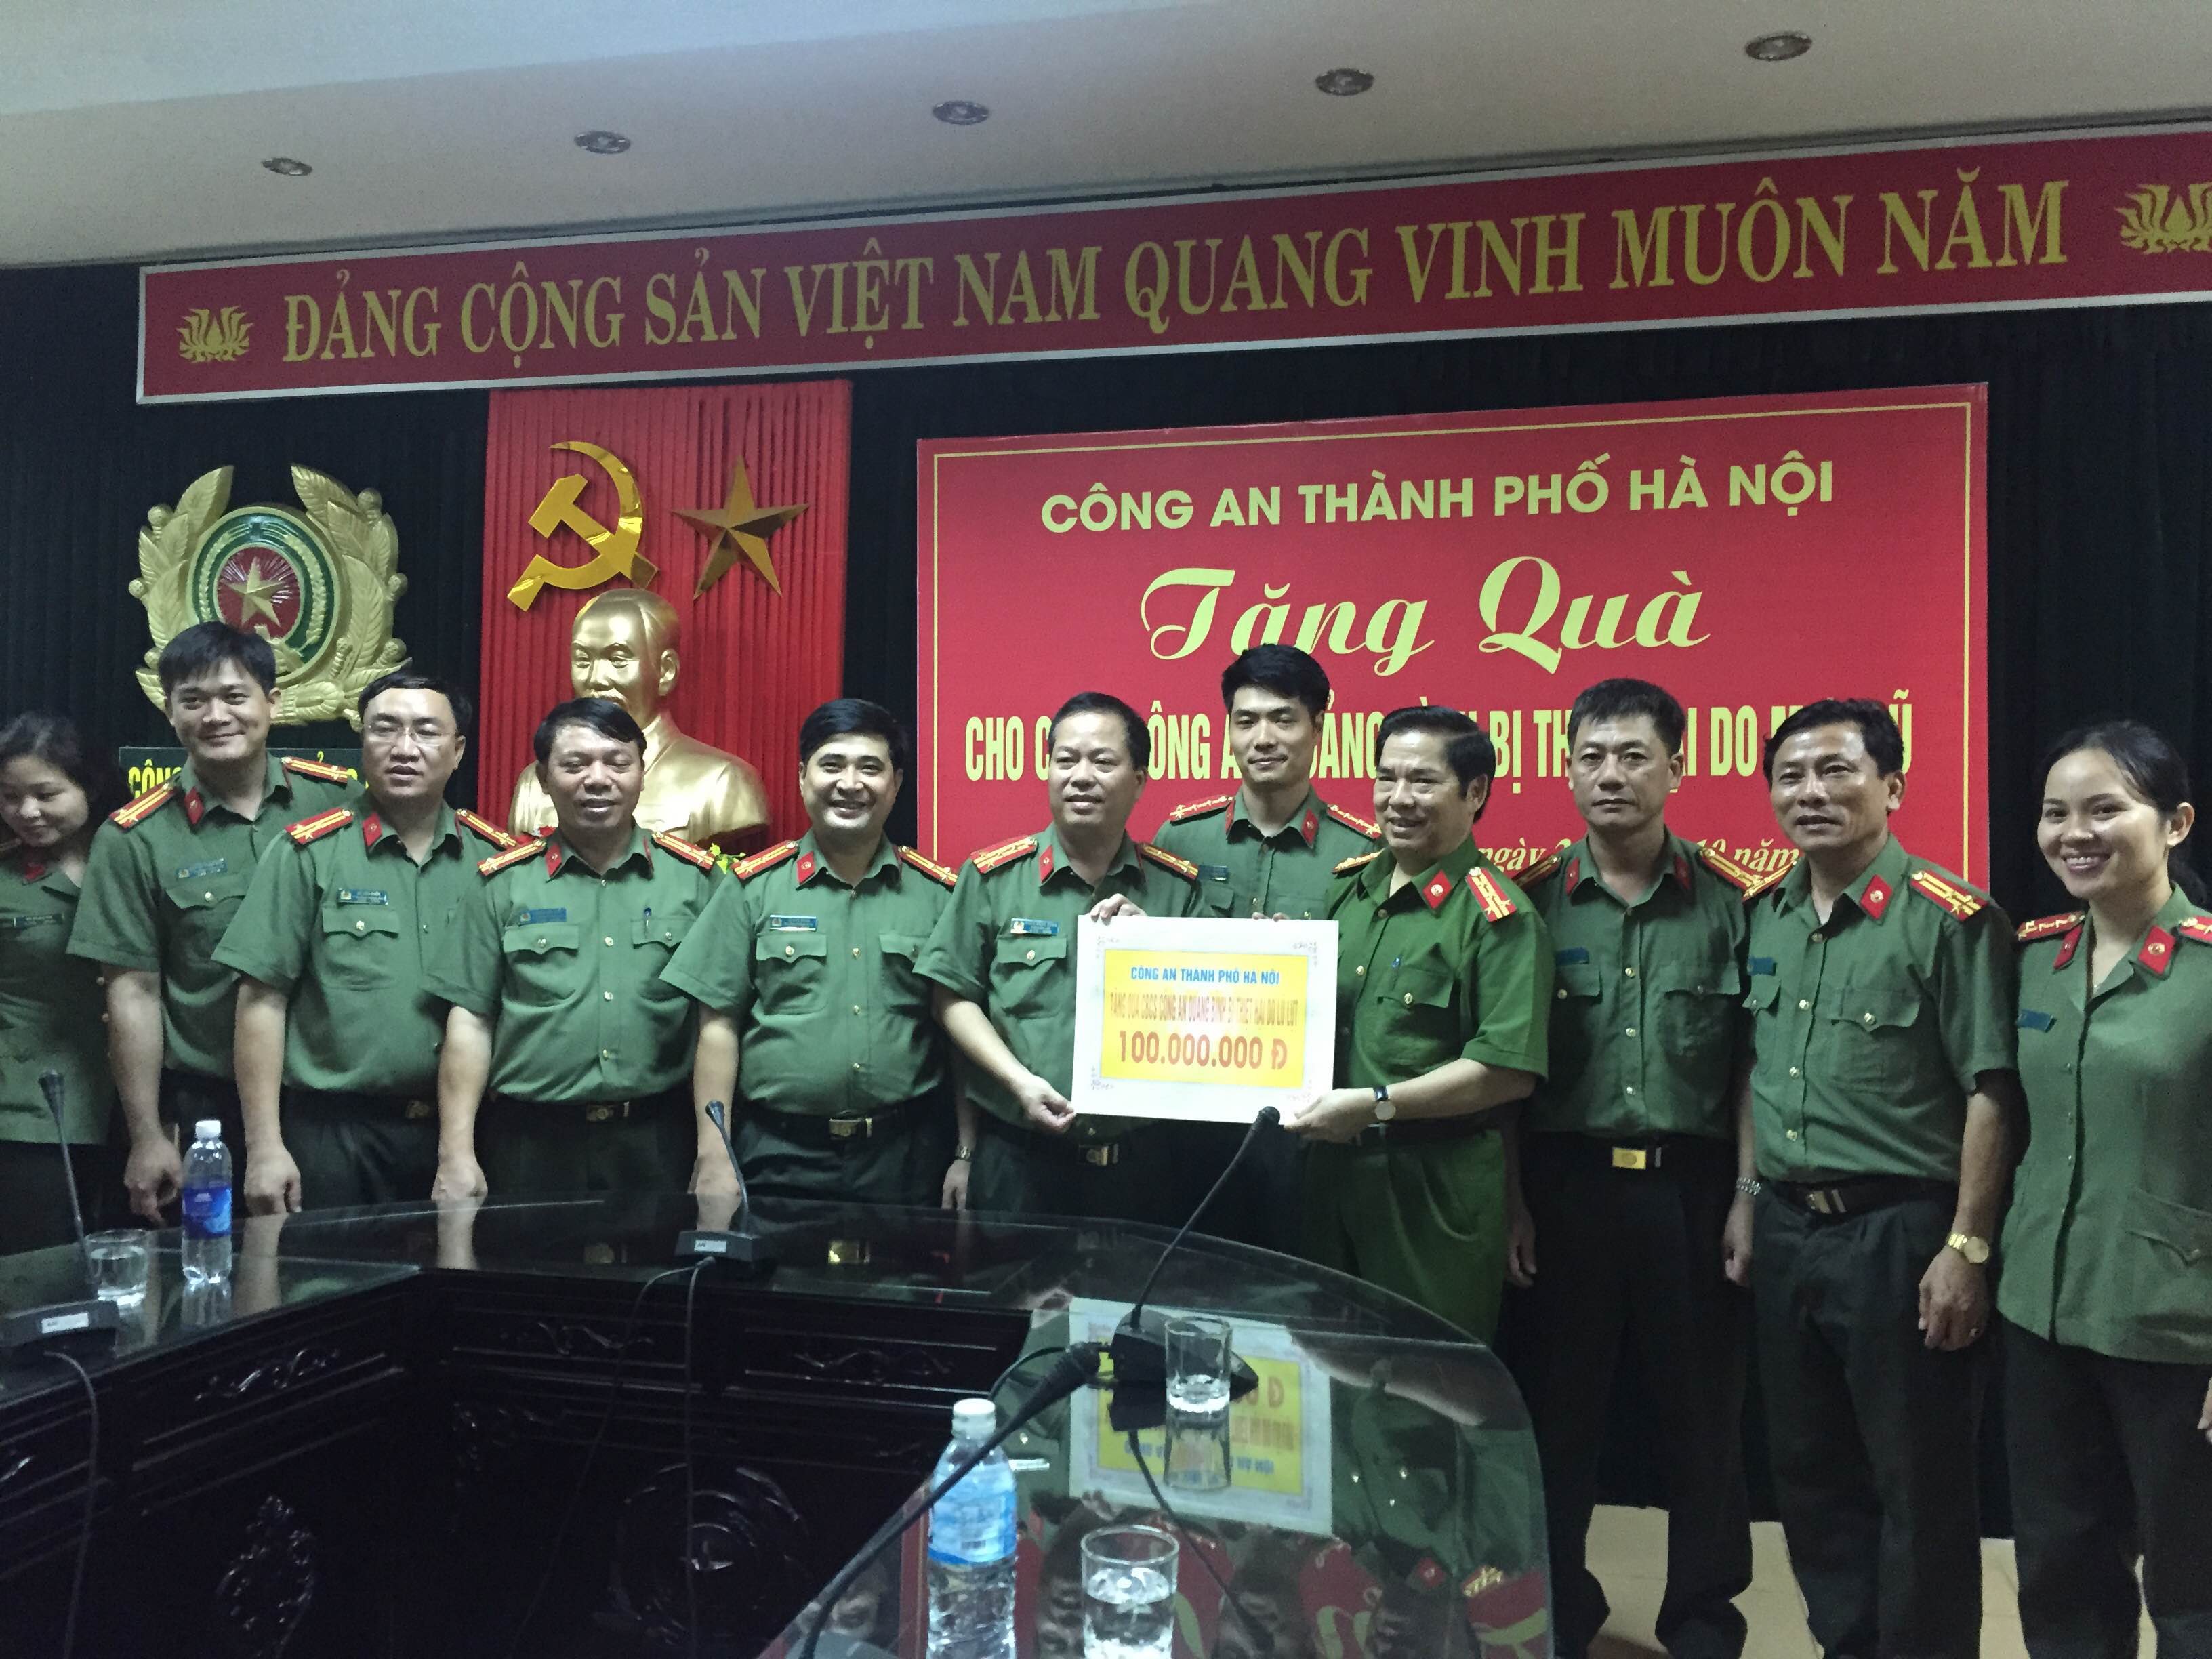 Đại tá Trần Minh Thùy- Phó Giám đốc Công an tỉnh đón nhận món quà từ Công an Thành phố Hà Nội